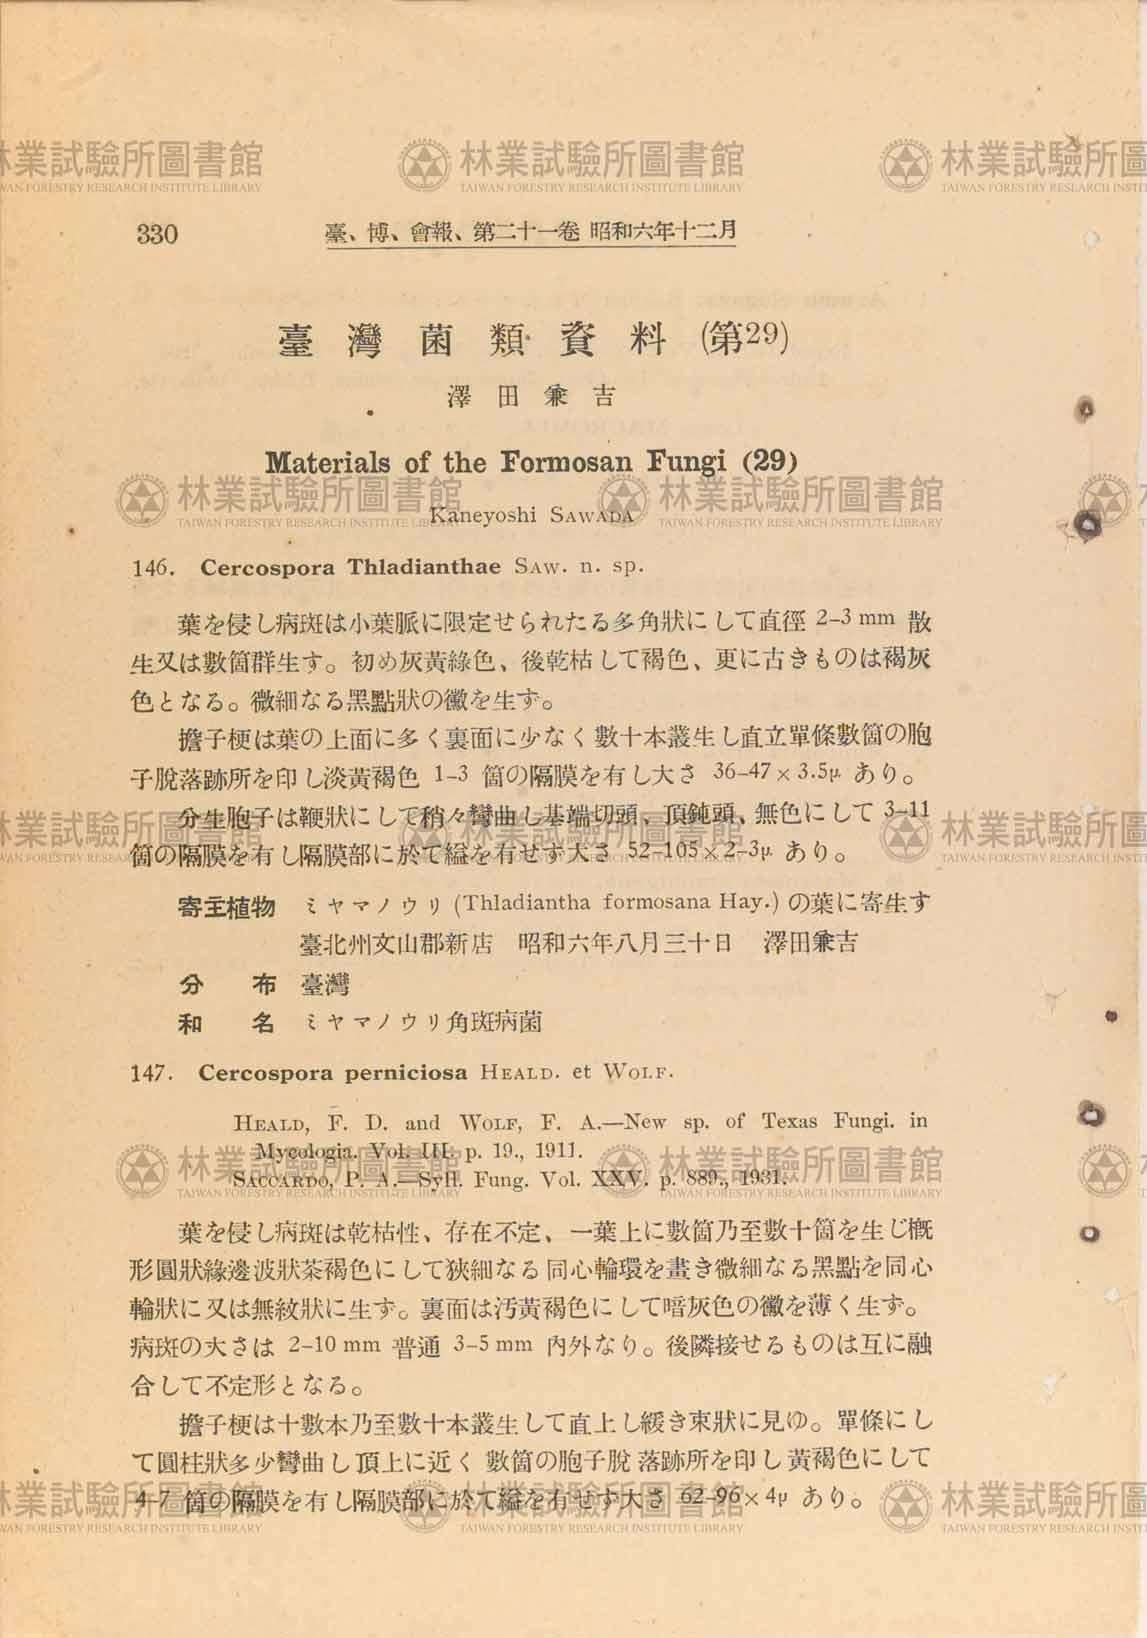 篇名:臺灣菌類資料(29) Materials of the Formosan fungi(29)